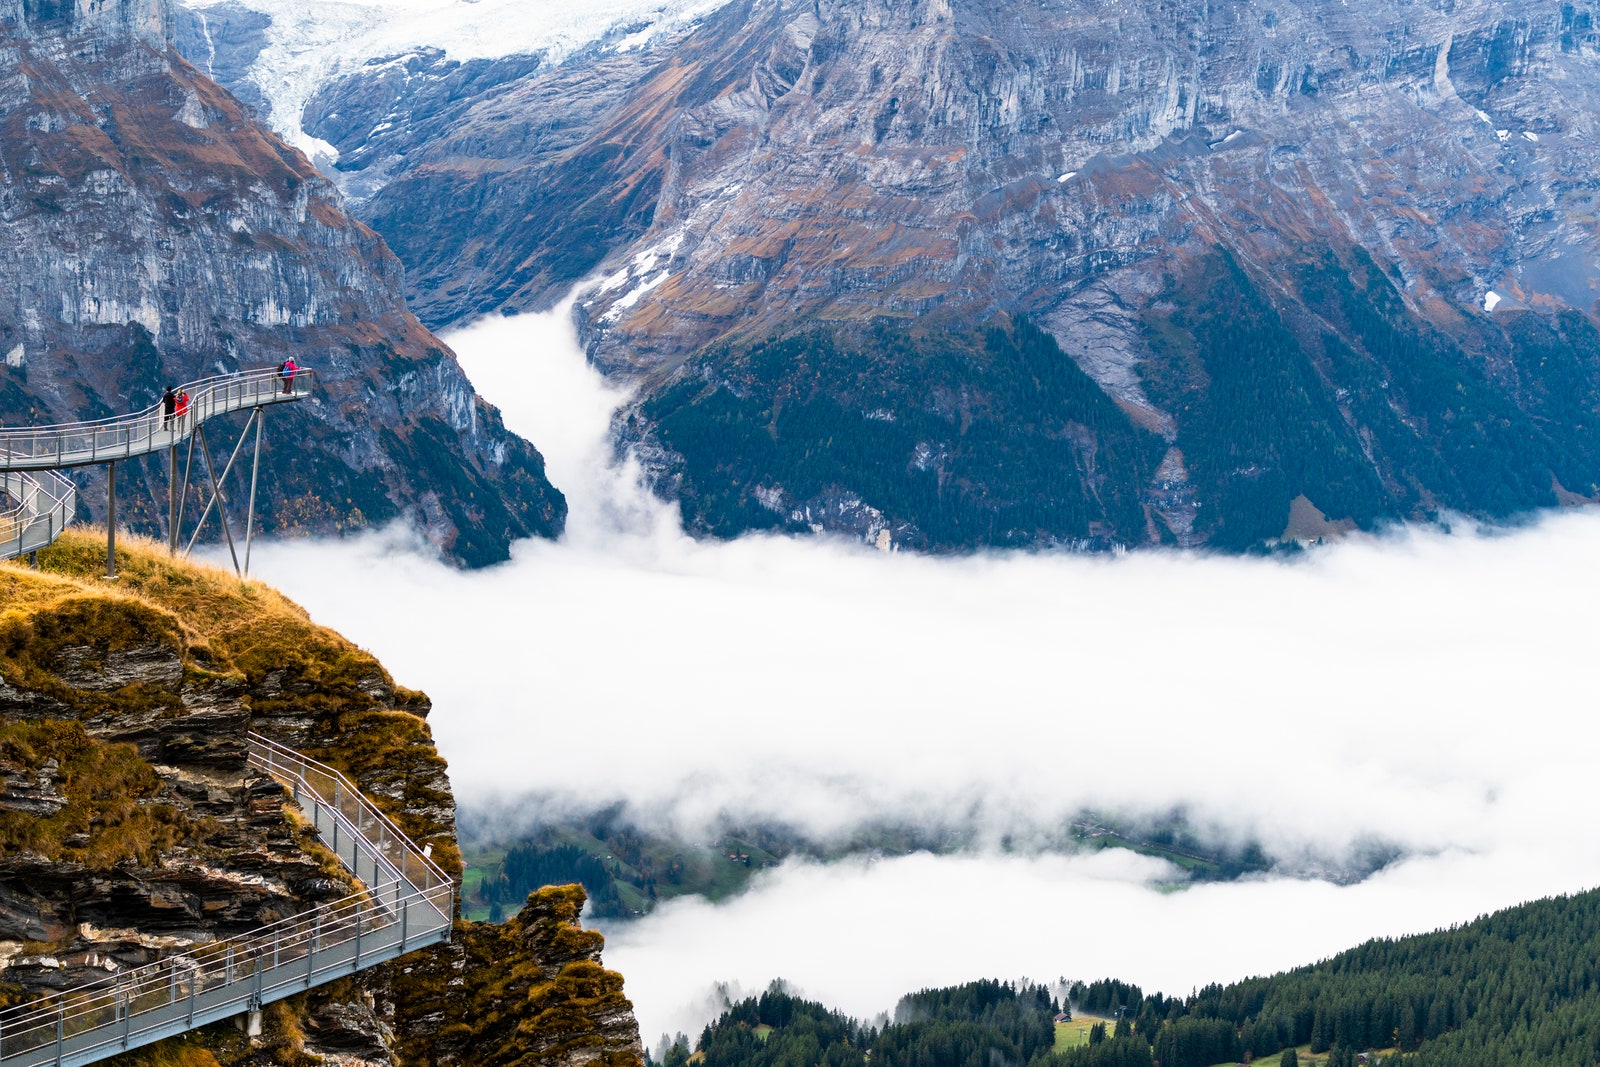 ファースト・クリフ・ウォークの高架歩道のプラットフォームから秋の霧を眺める人々 スイス・ベルン州グリンデルヴァルト